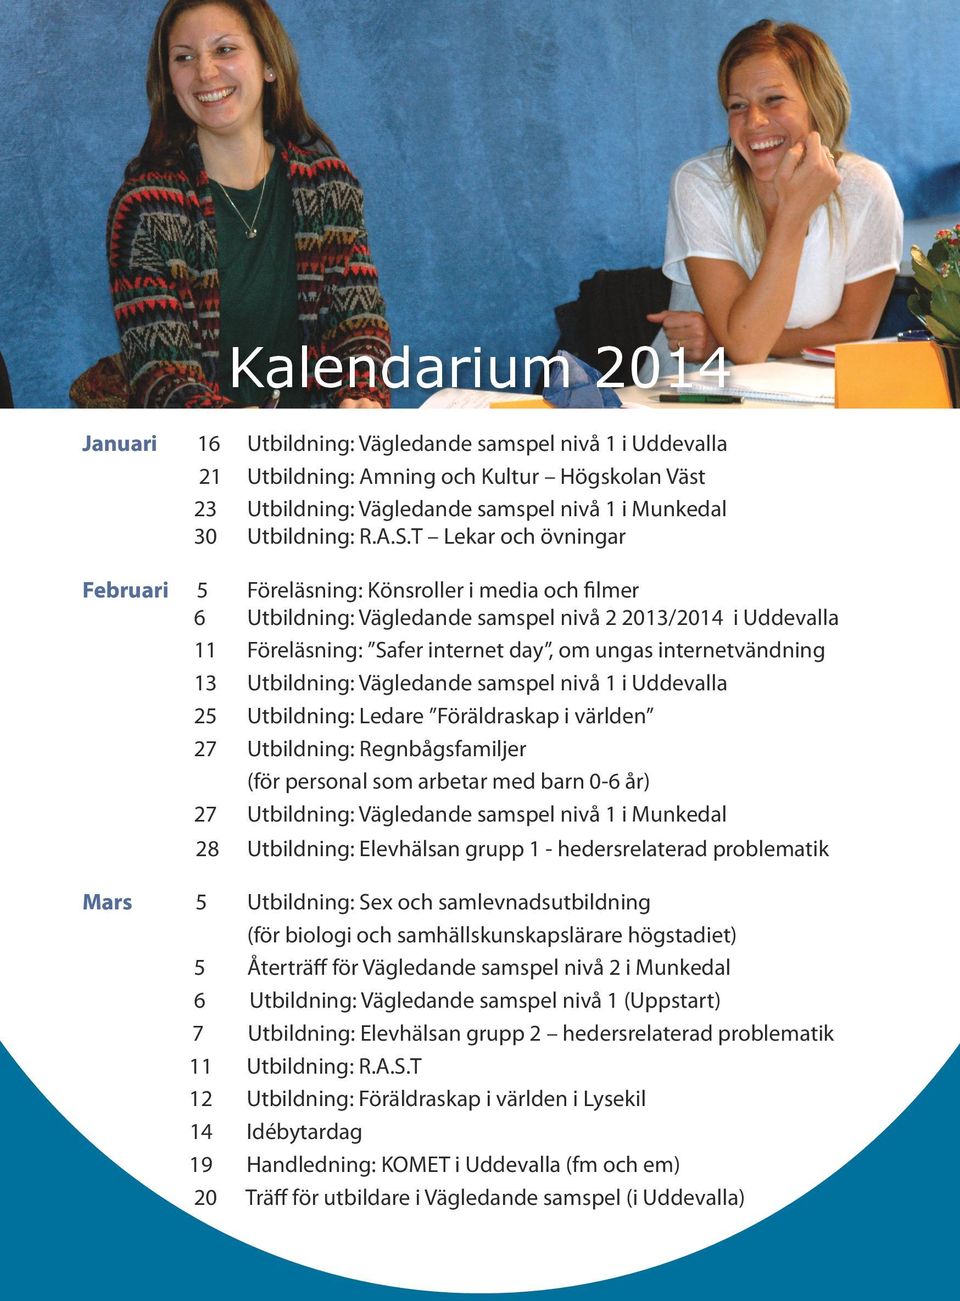 internetvändning 13 Utbildning: Vägledande samspel nivå 1 i Uddevalla 25 Utbildning: Ledare Föräldraskap i världen 27 Utbildning: Regnbågsfamiljer (för personal som arbetar med barn 0-6 år) 27